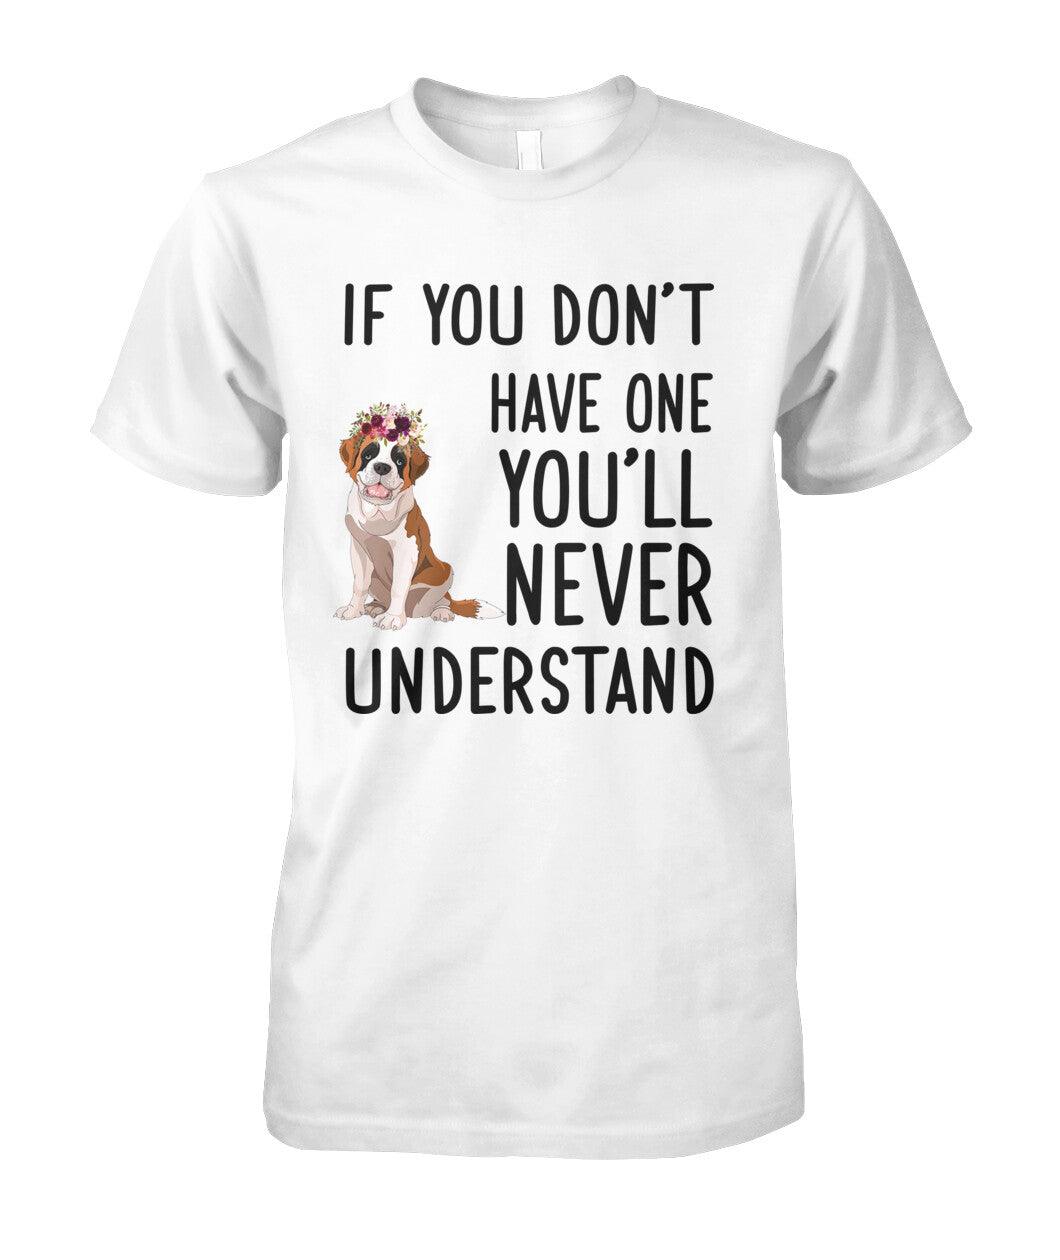 St. Bernard Unisex T Shirt - St. Bernard If You Don't Have One You'll Never Understand Unisex T Shirt - Gift For St. Bernard Lovers, Family, Friends - Amzanimalsgift